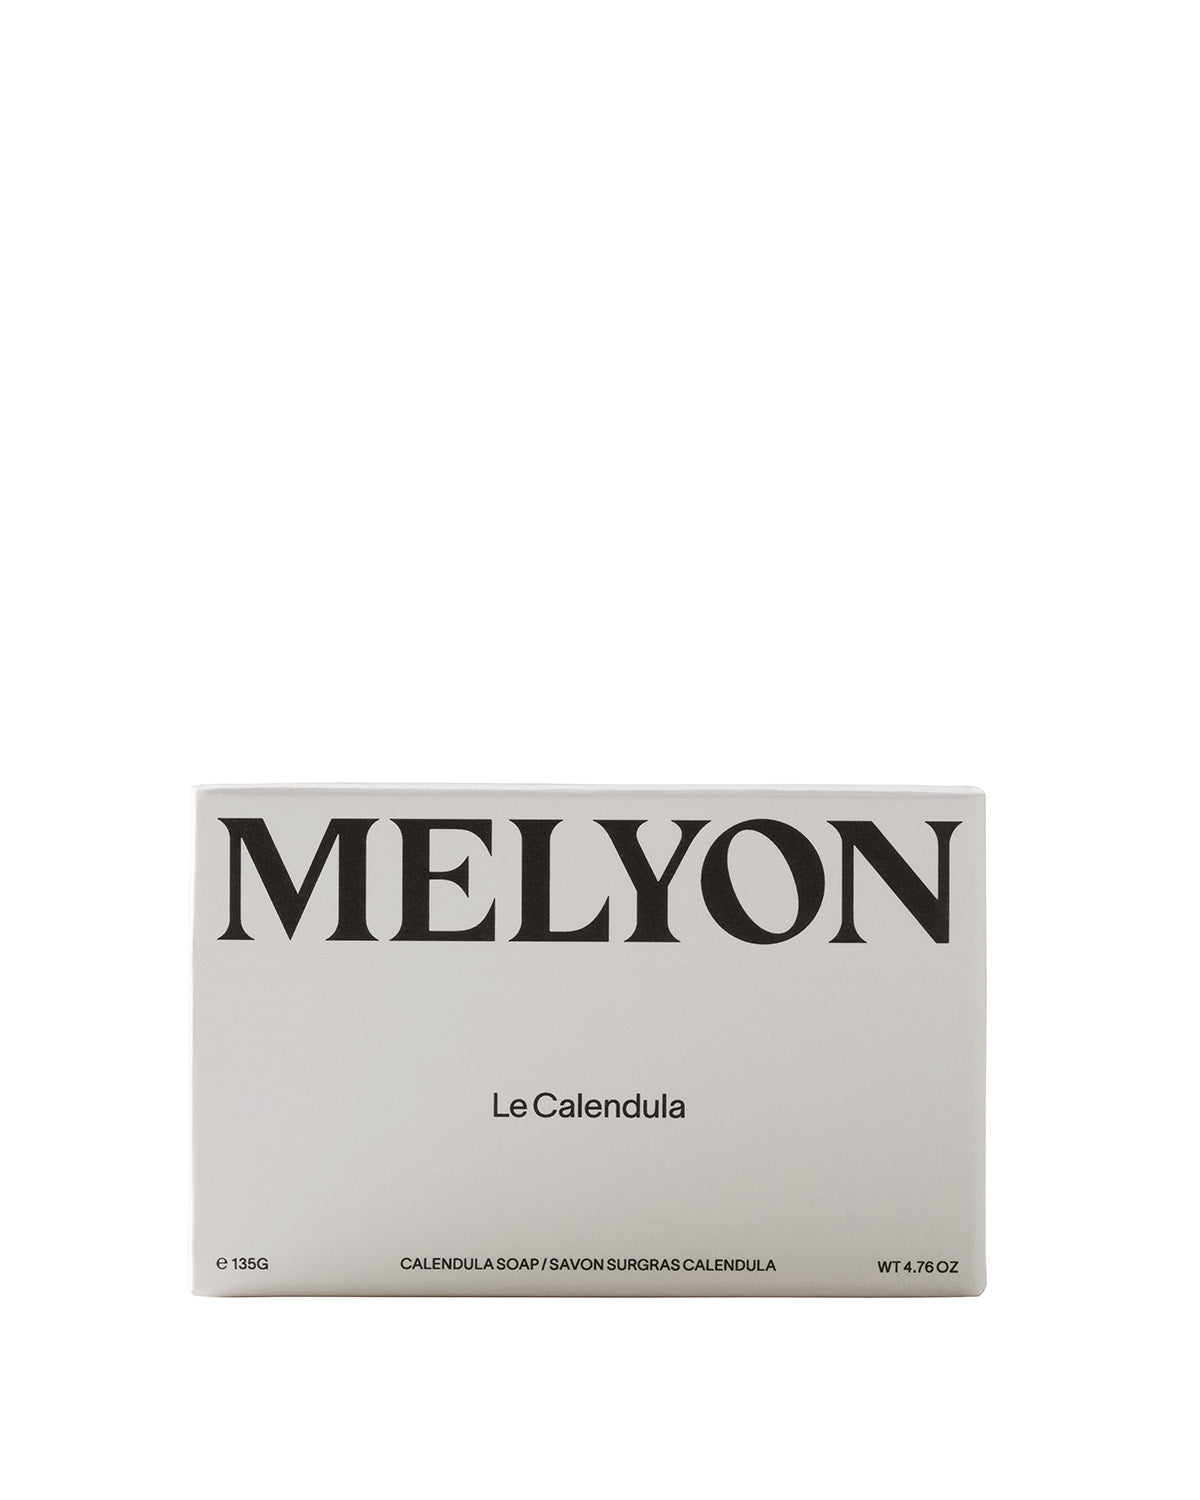 MELYON - LE CALENDULA - CALENDULA BAR SOAP